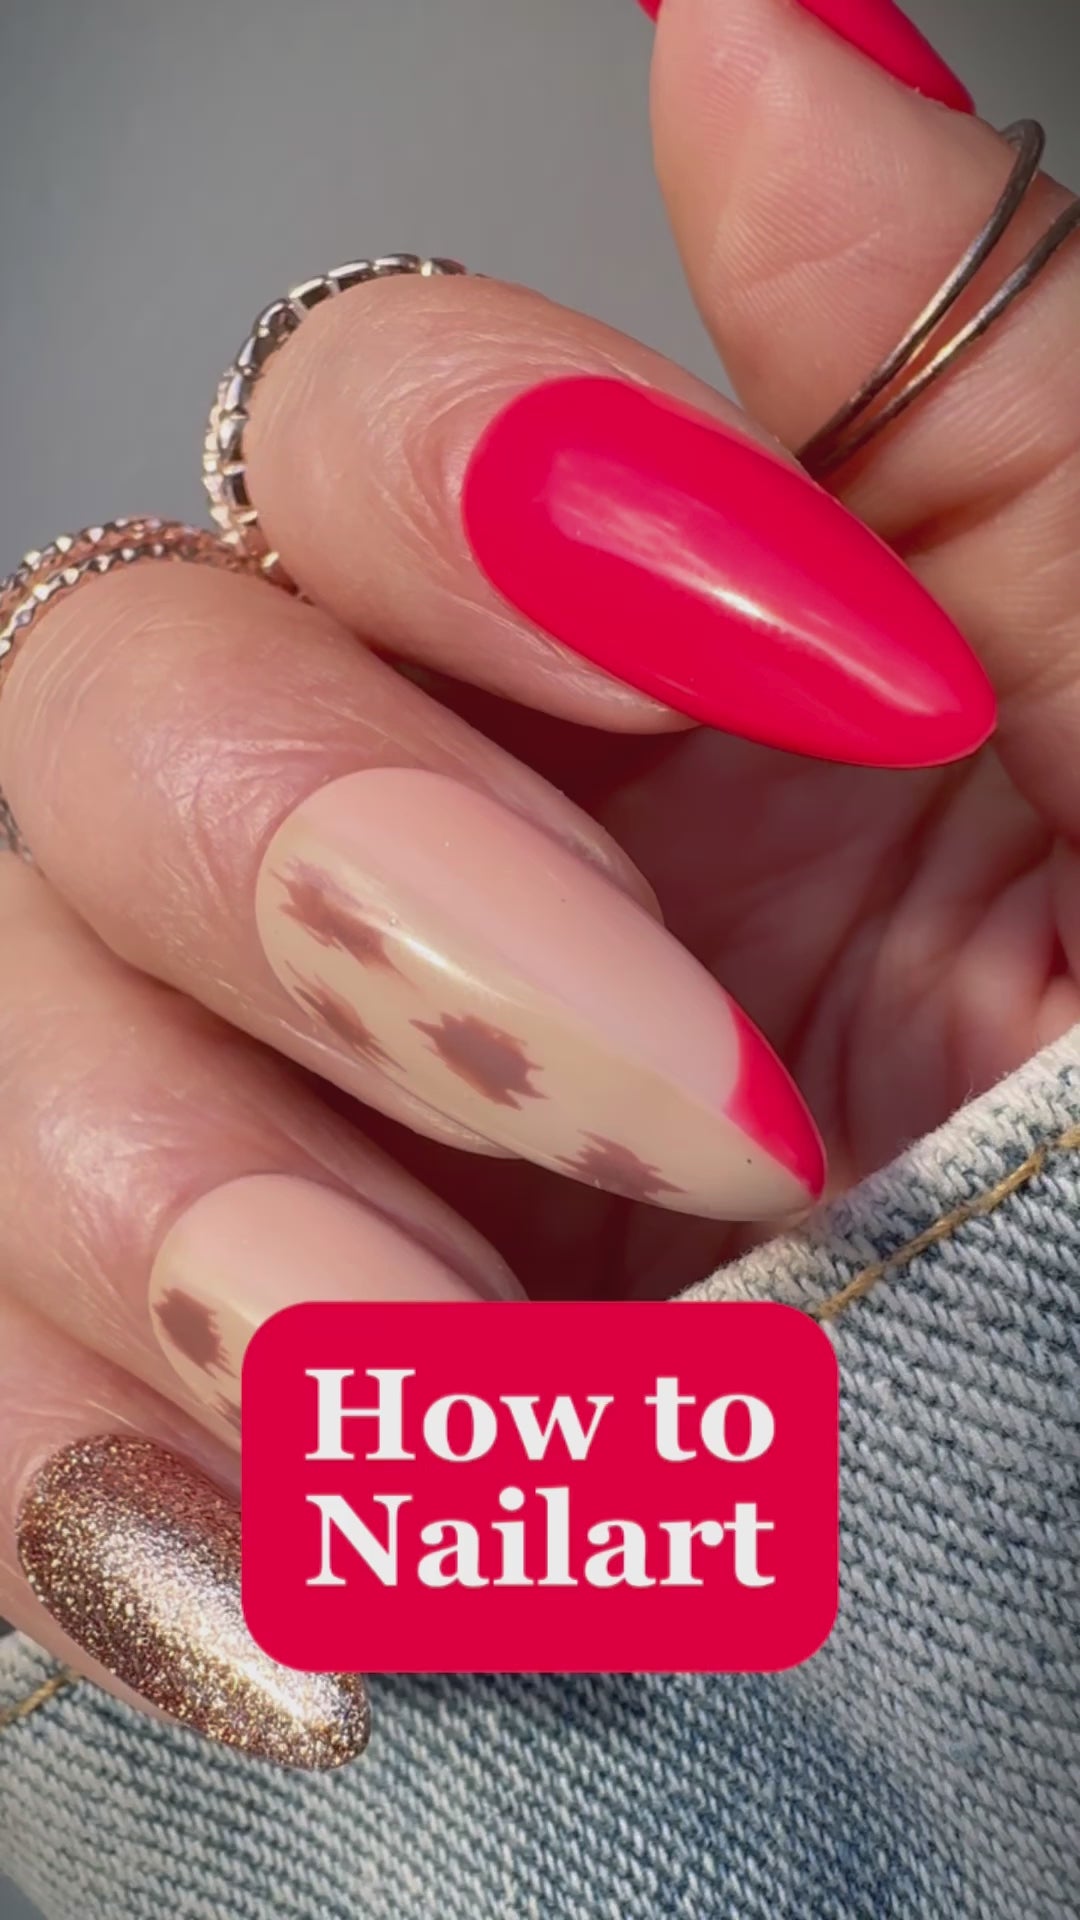 Nailart tutorial. Deze zomerse rode nailart gellak set kun je in een keer kopen, zodat jij ook deze toffe nagels kun maken